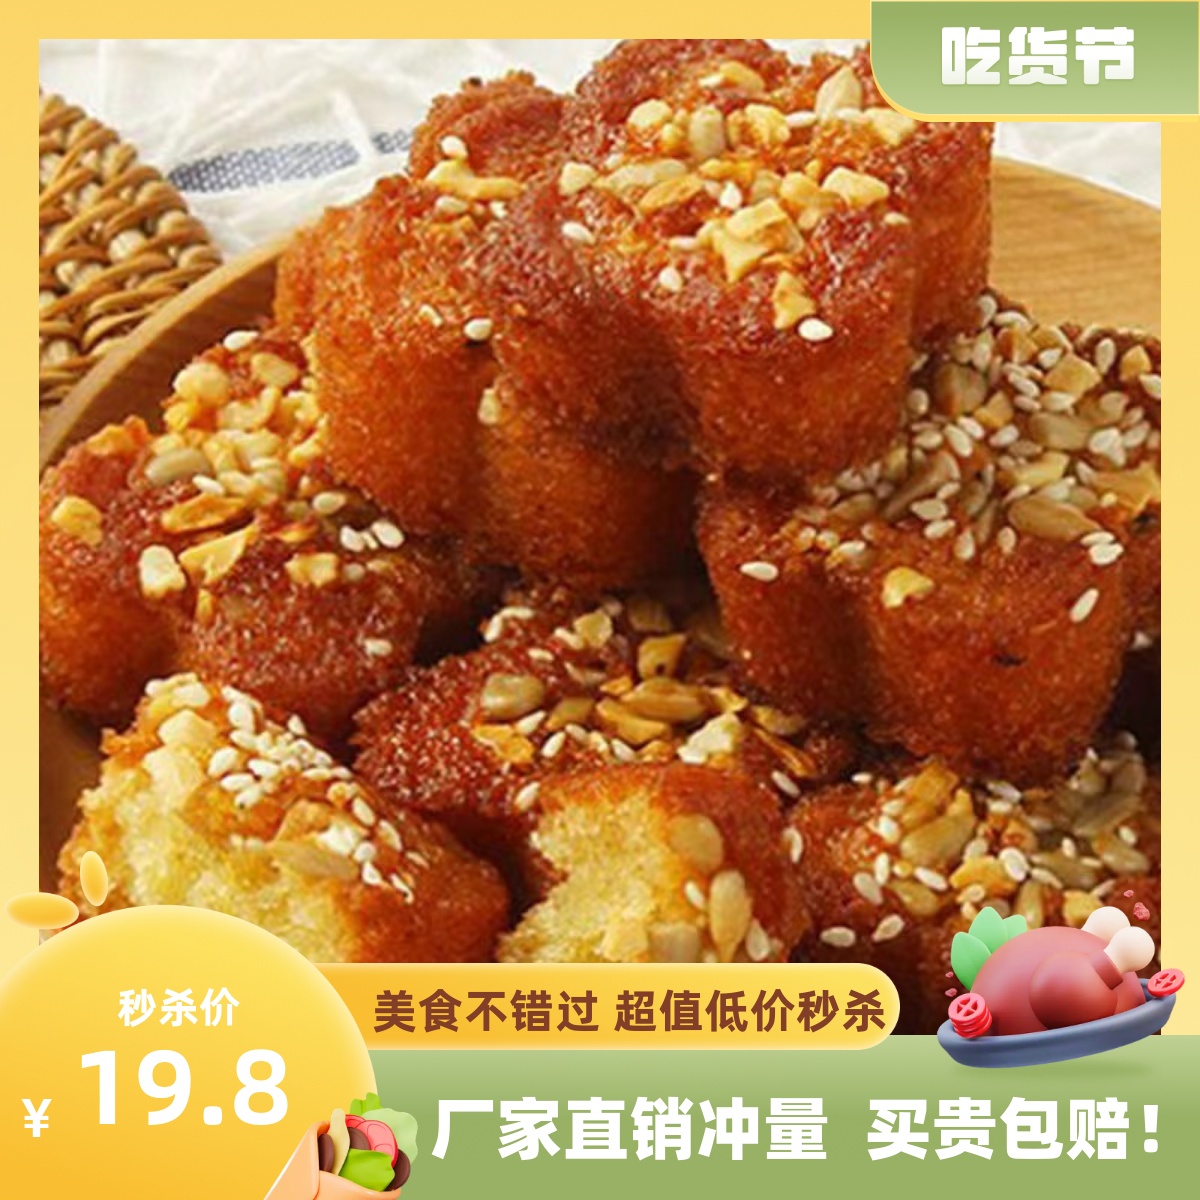 中江八宝油糕精品礼盒新鲜真空包装传统美食休闲零食四川特产特惠